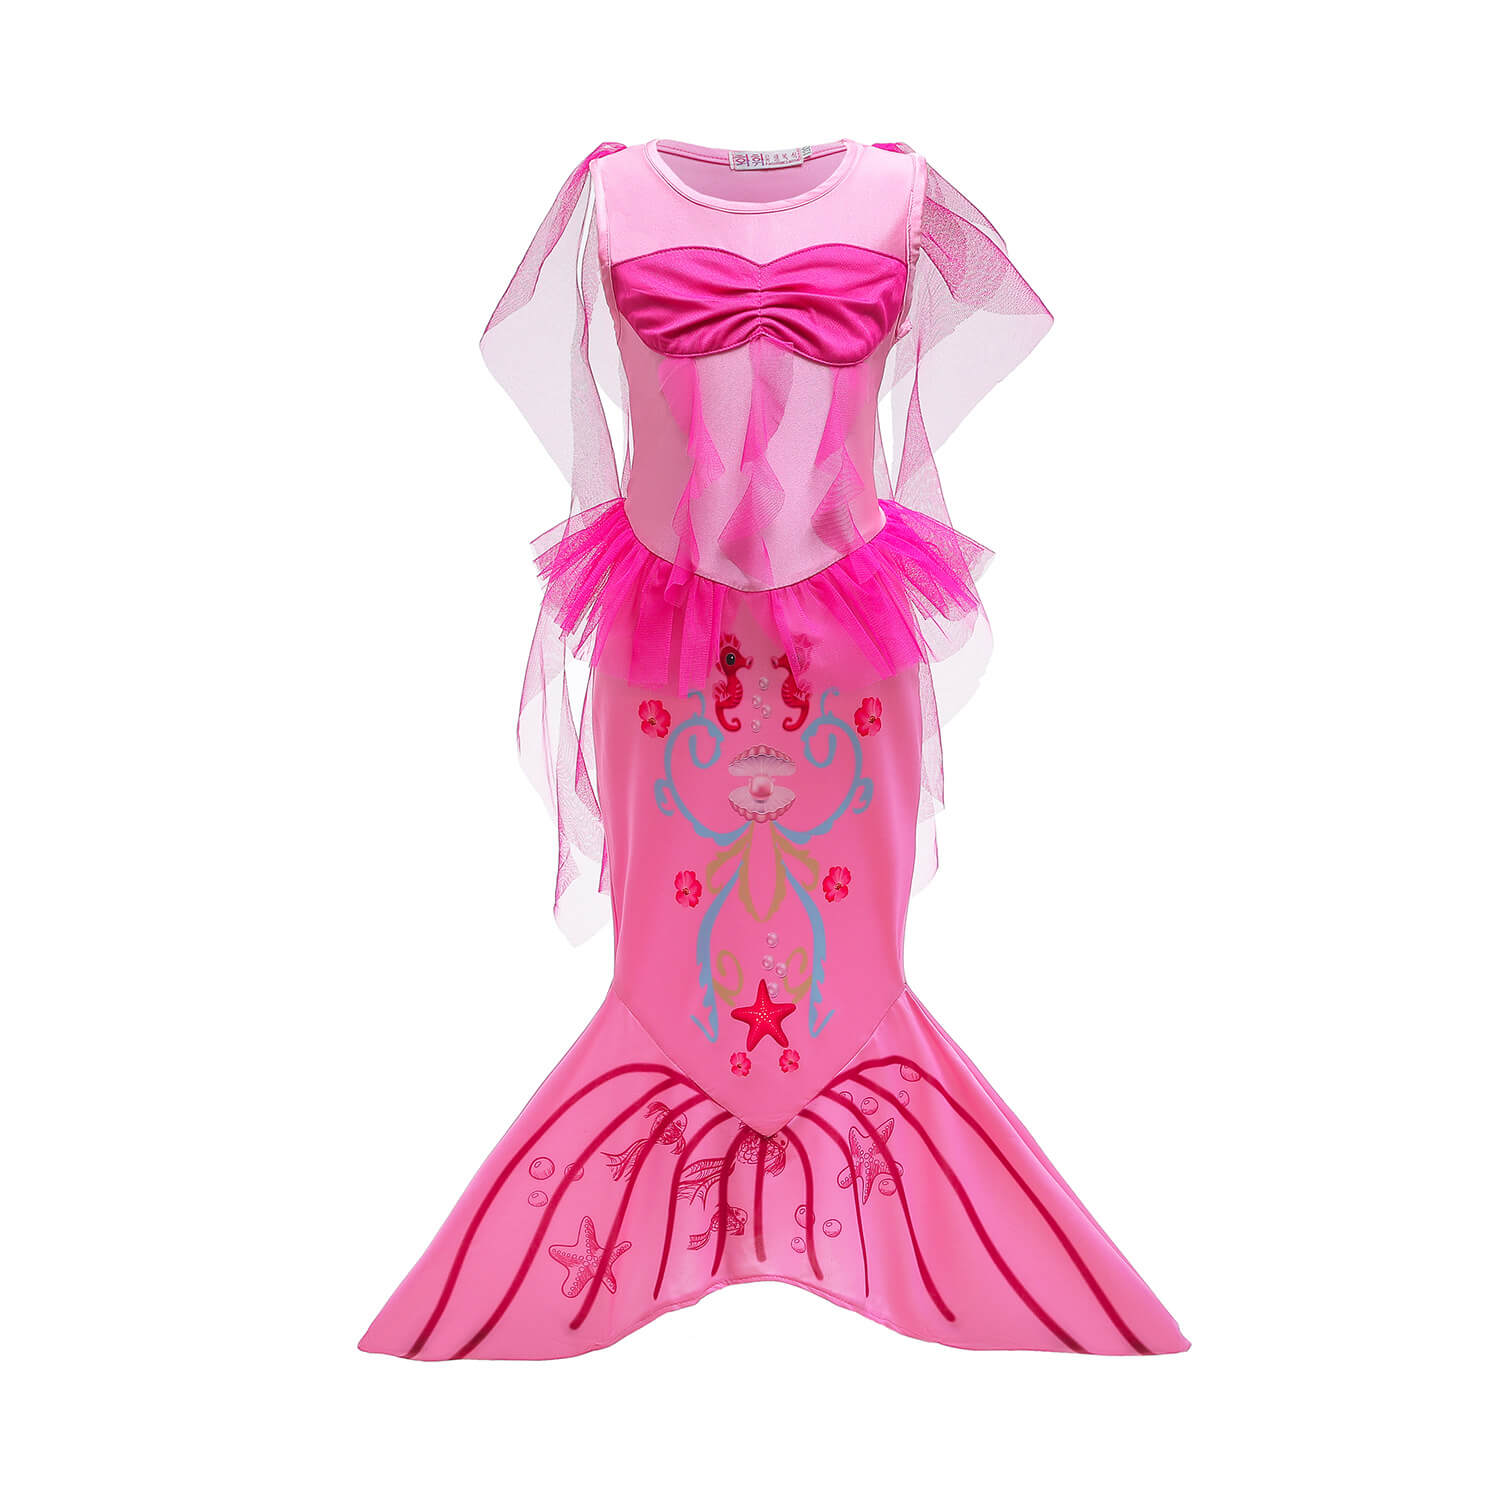 Kids Mermaid Ariel Pink Dress Mermaid Tail Wig Headband Accessories Girls Princess Full Set Costume